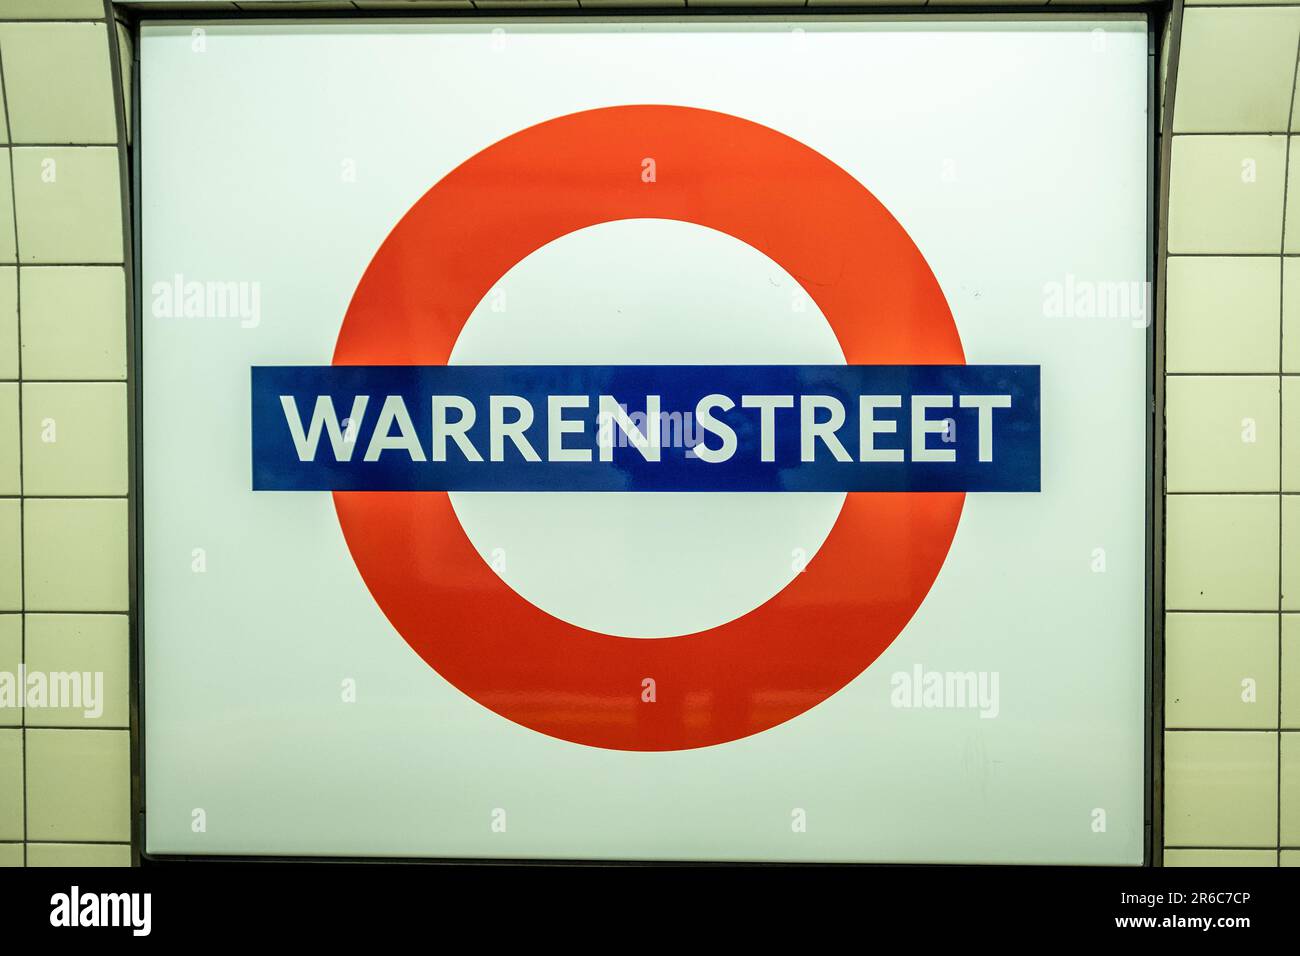 LONDRES - 21 MARS 2023 : station de métro Warren Street, une station de ligne Northern et Victoria dans la zone 1. Banque D'Images